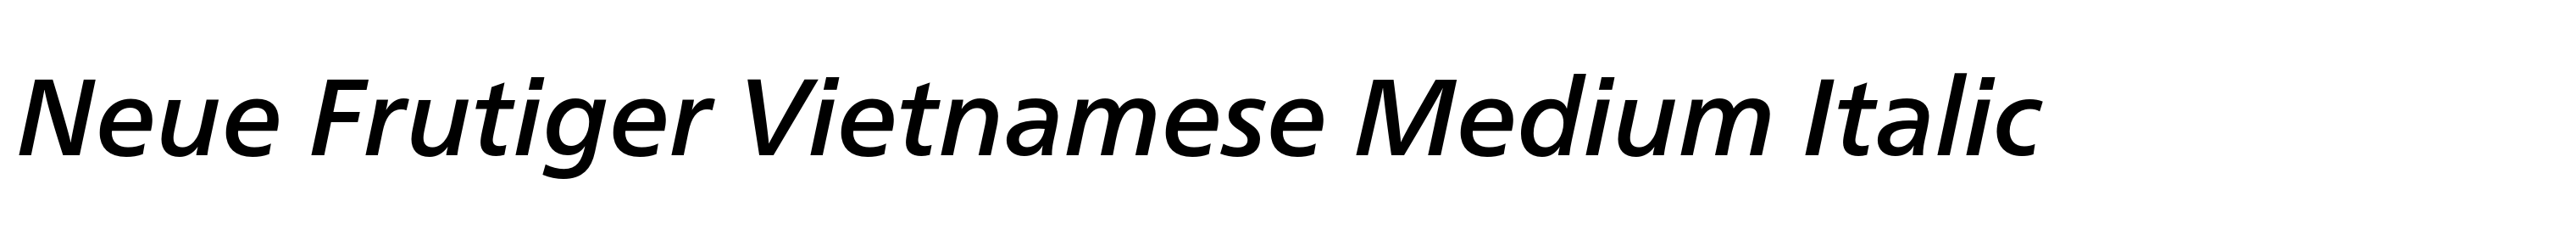 Neue Frutiger Vietnamese Medium Italic